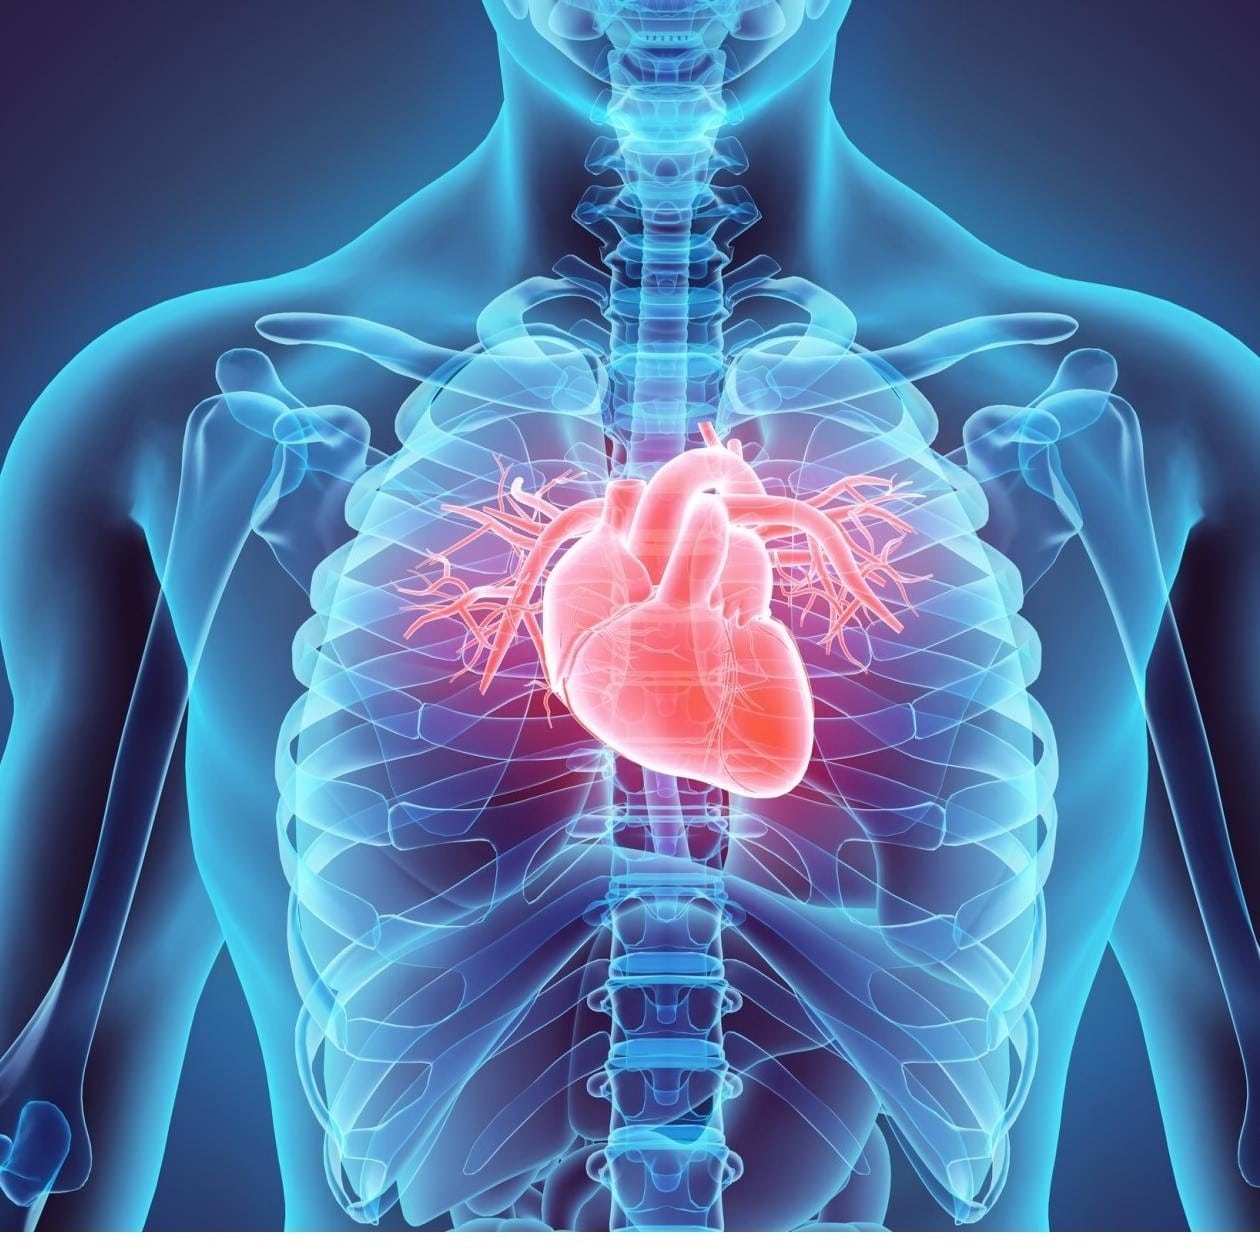 6 عوامل وقائية لتجنب الإصابة بأمراض القلب